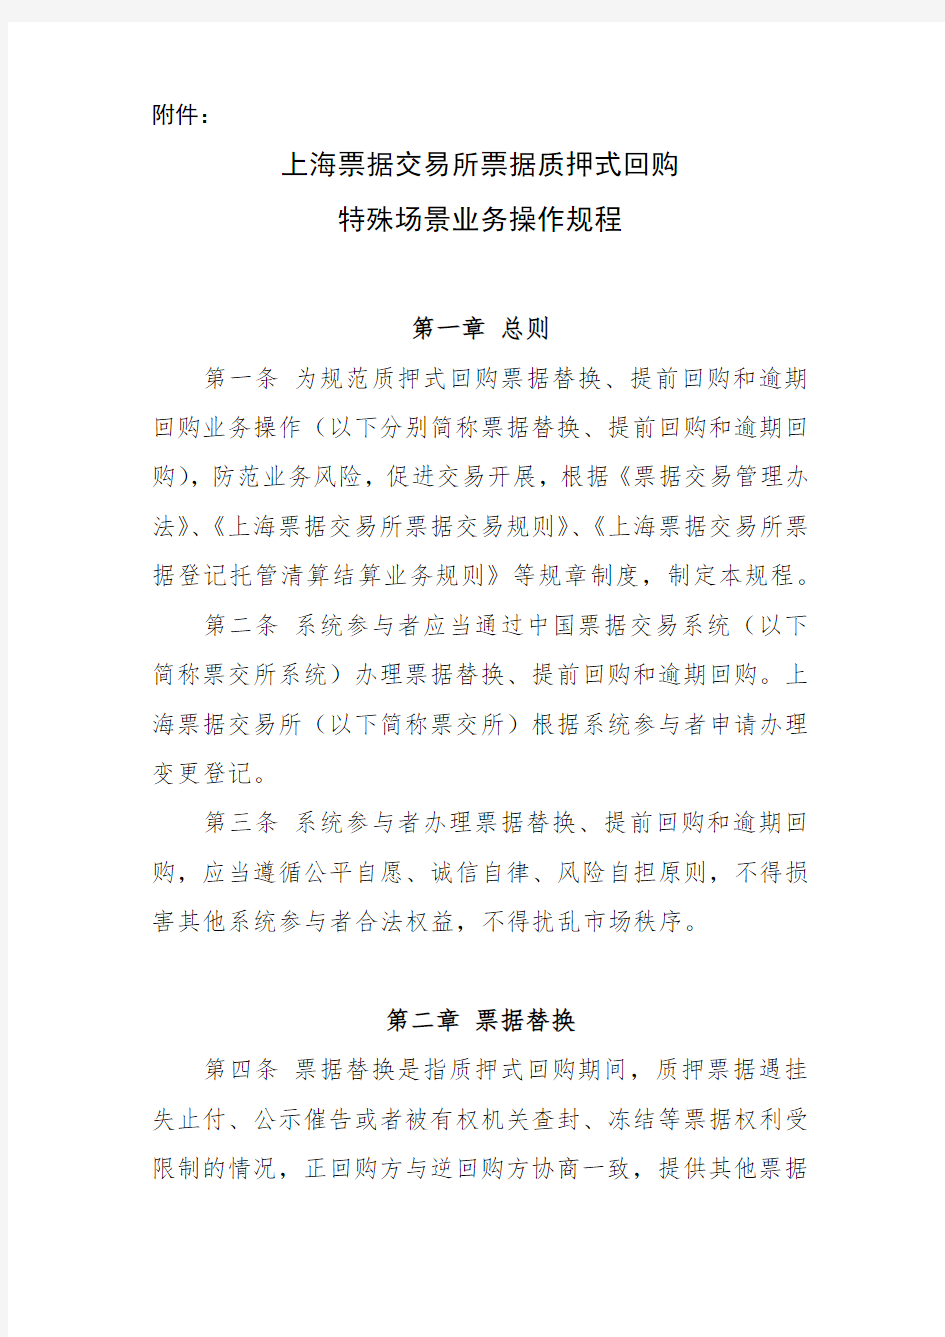 上海票据交易所票据质押式回购特殊场景业务操作规程